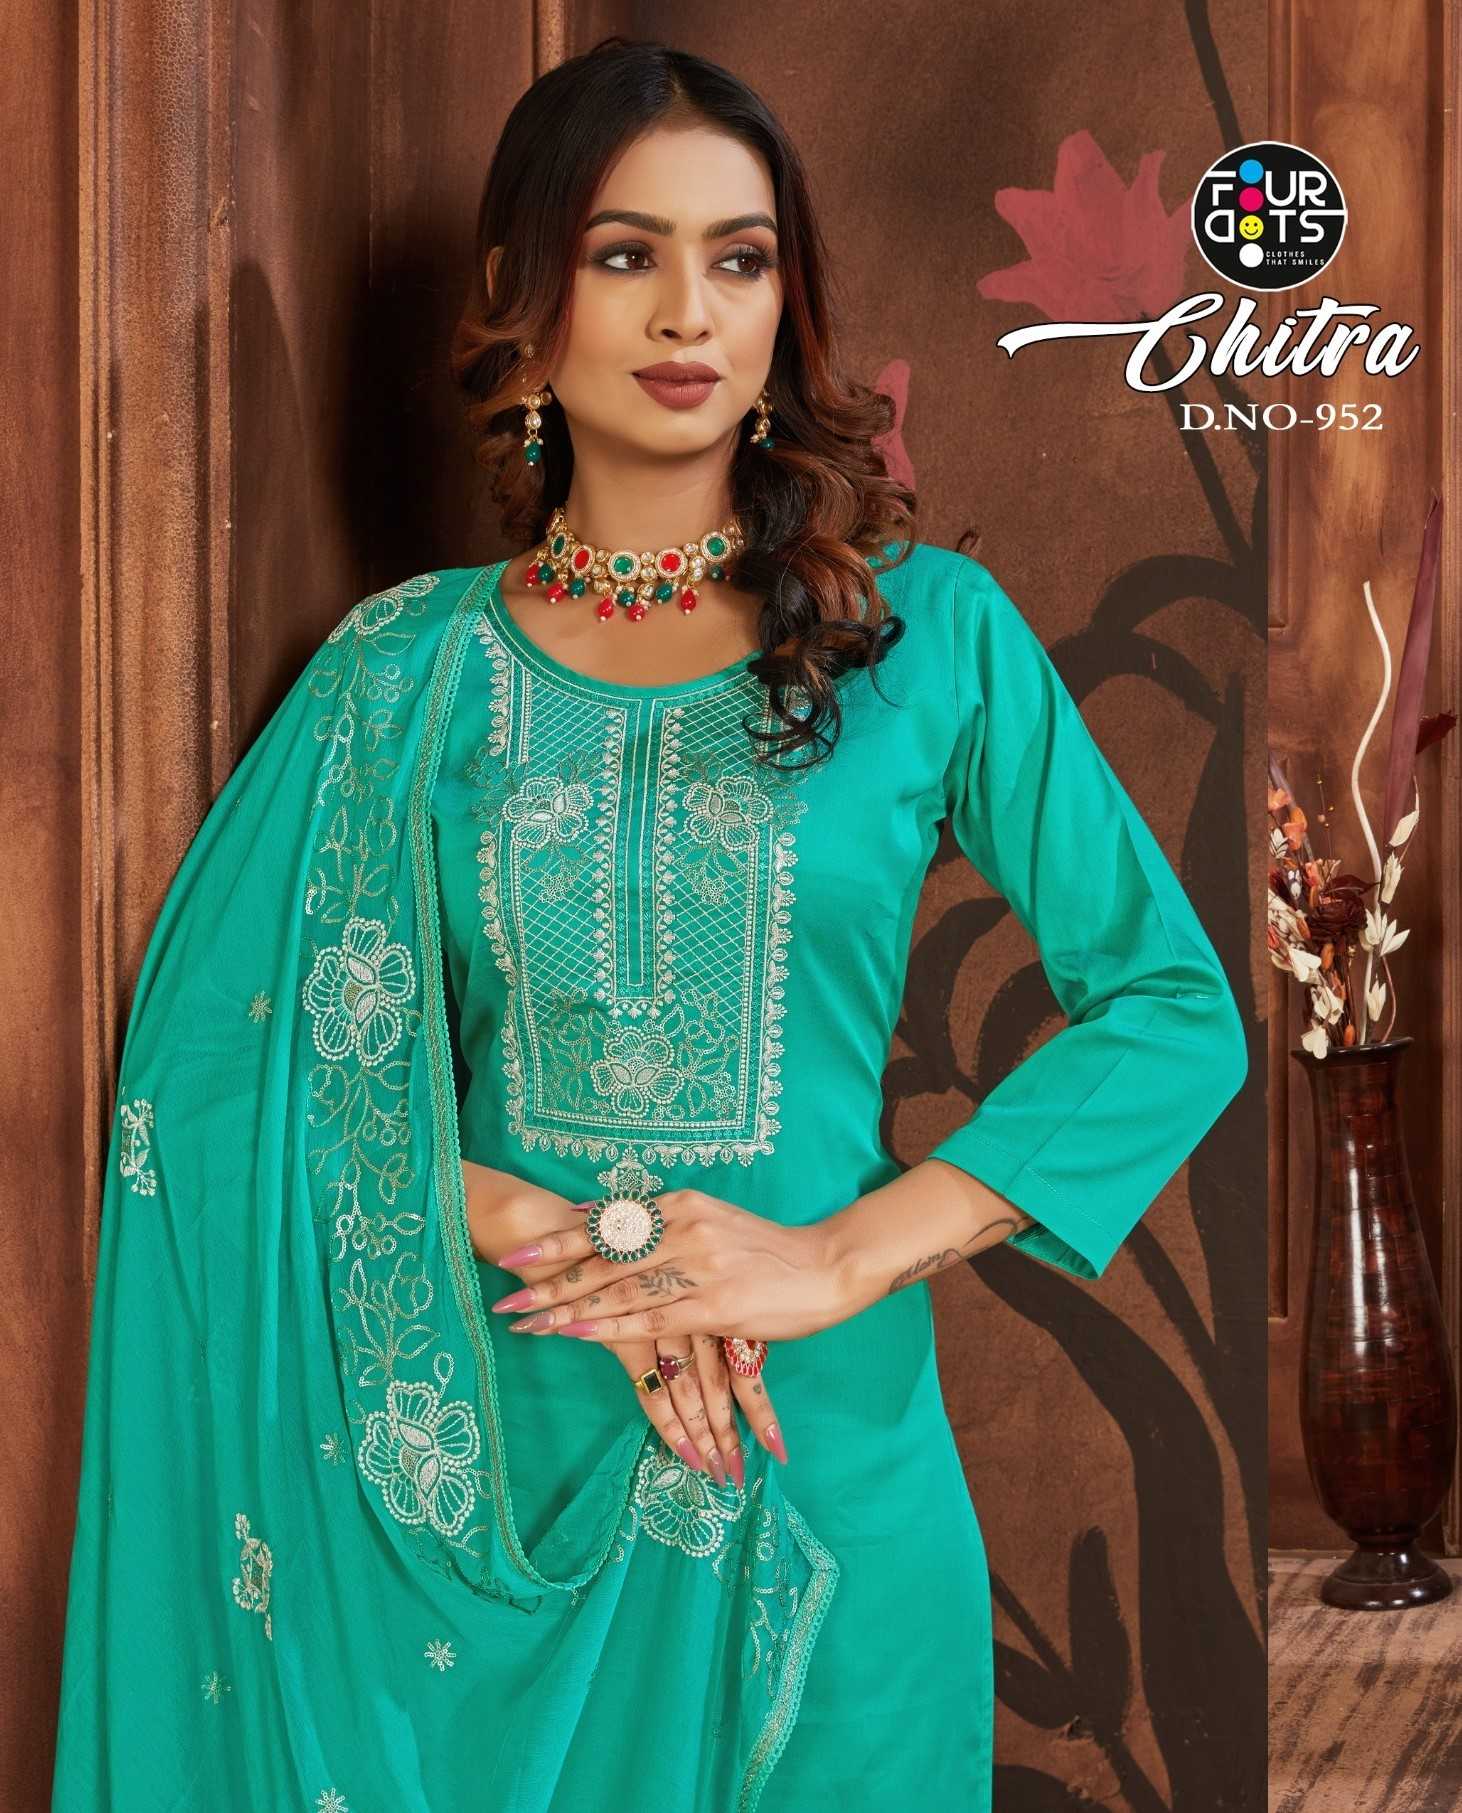 fourdots chitra 951- 954 amazing jam silk cotton unstitch salwar kameez